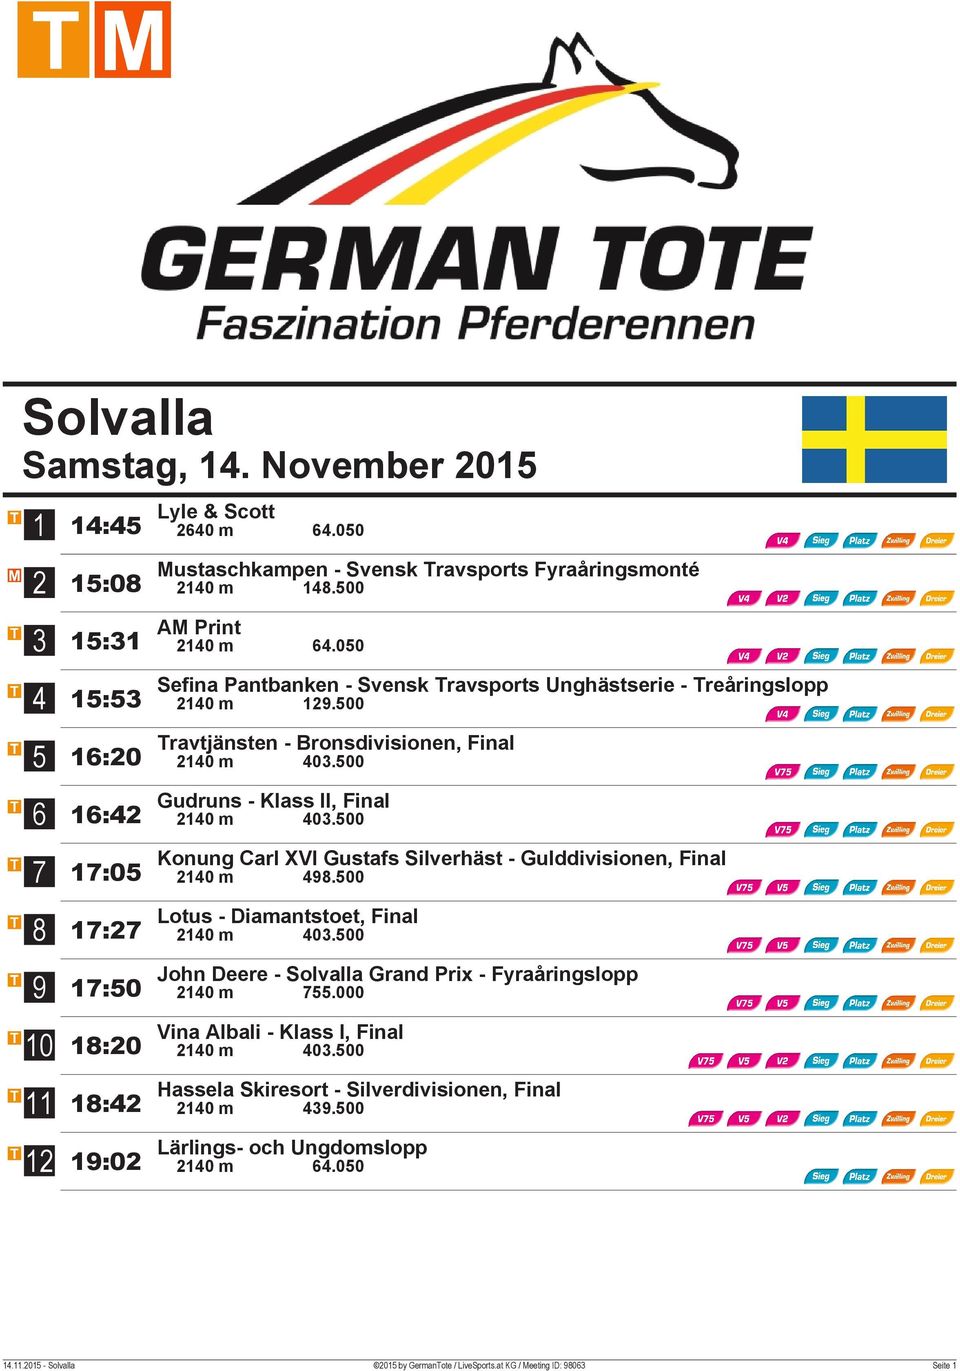 00 Konung Carl XVI Gustafs Silverhäst - Gulddivisionen, Final 0 m.00 Lotus - Diamantstoet, Final 0 m 0.00 John Deere - Solvalla Grand Prix - Fyraåringslopp 0 m.